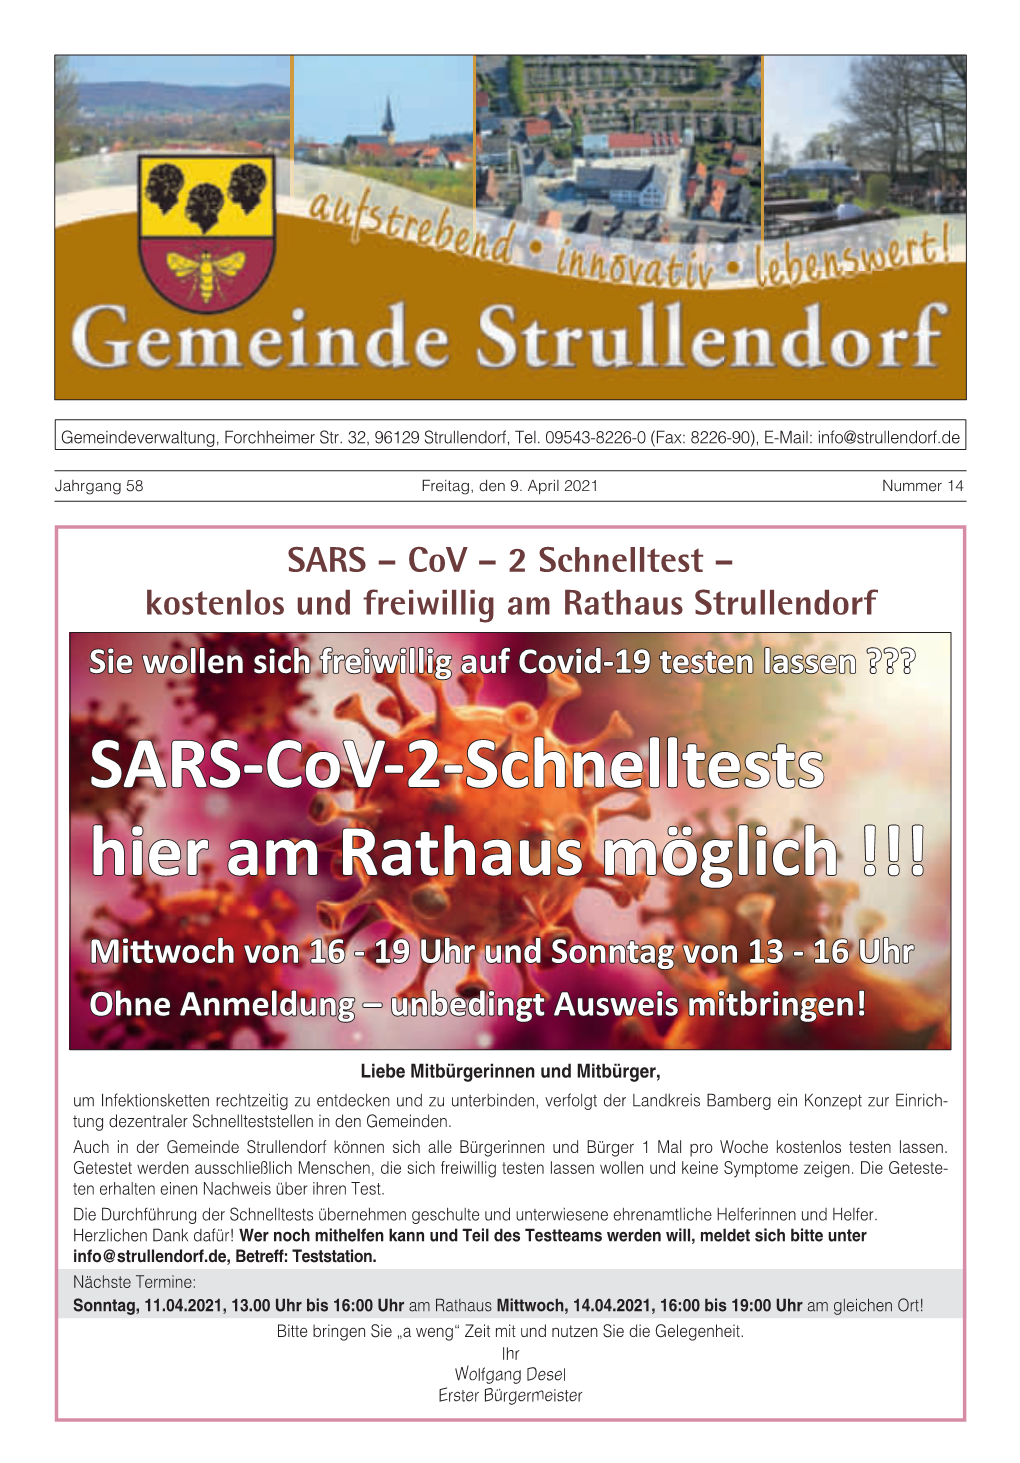 SARS-Cov-2-Schnelltests Hier Am Rathaus Möglich !!!